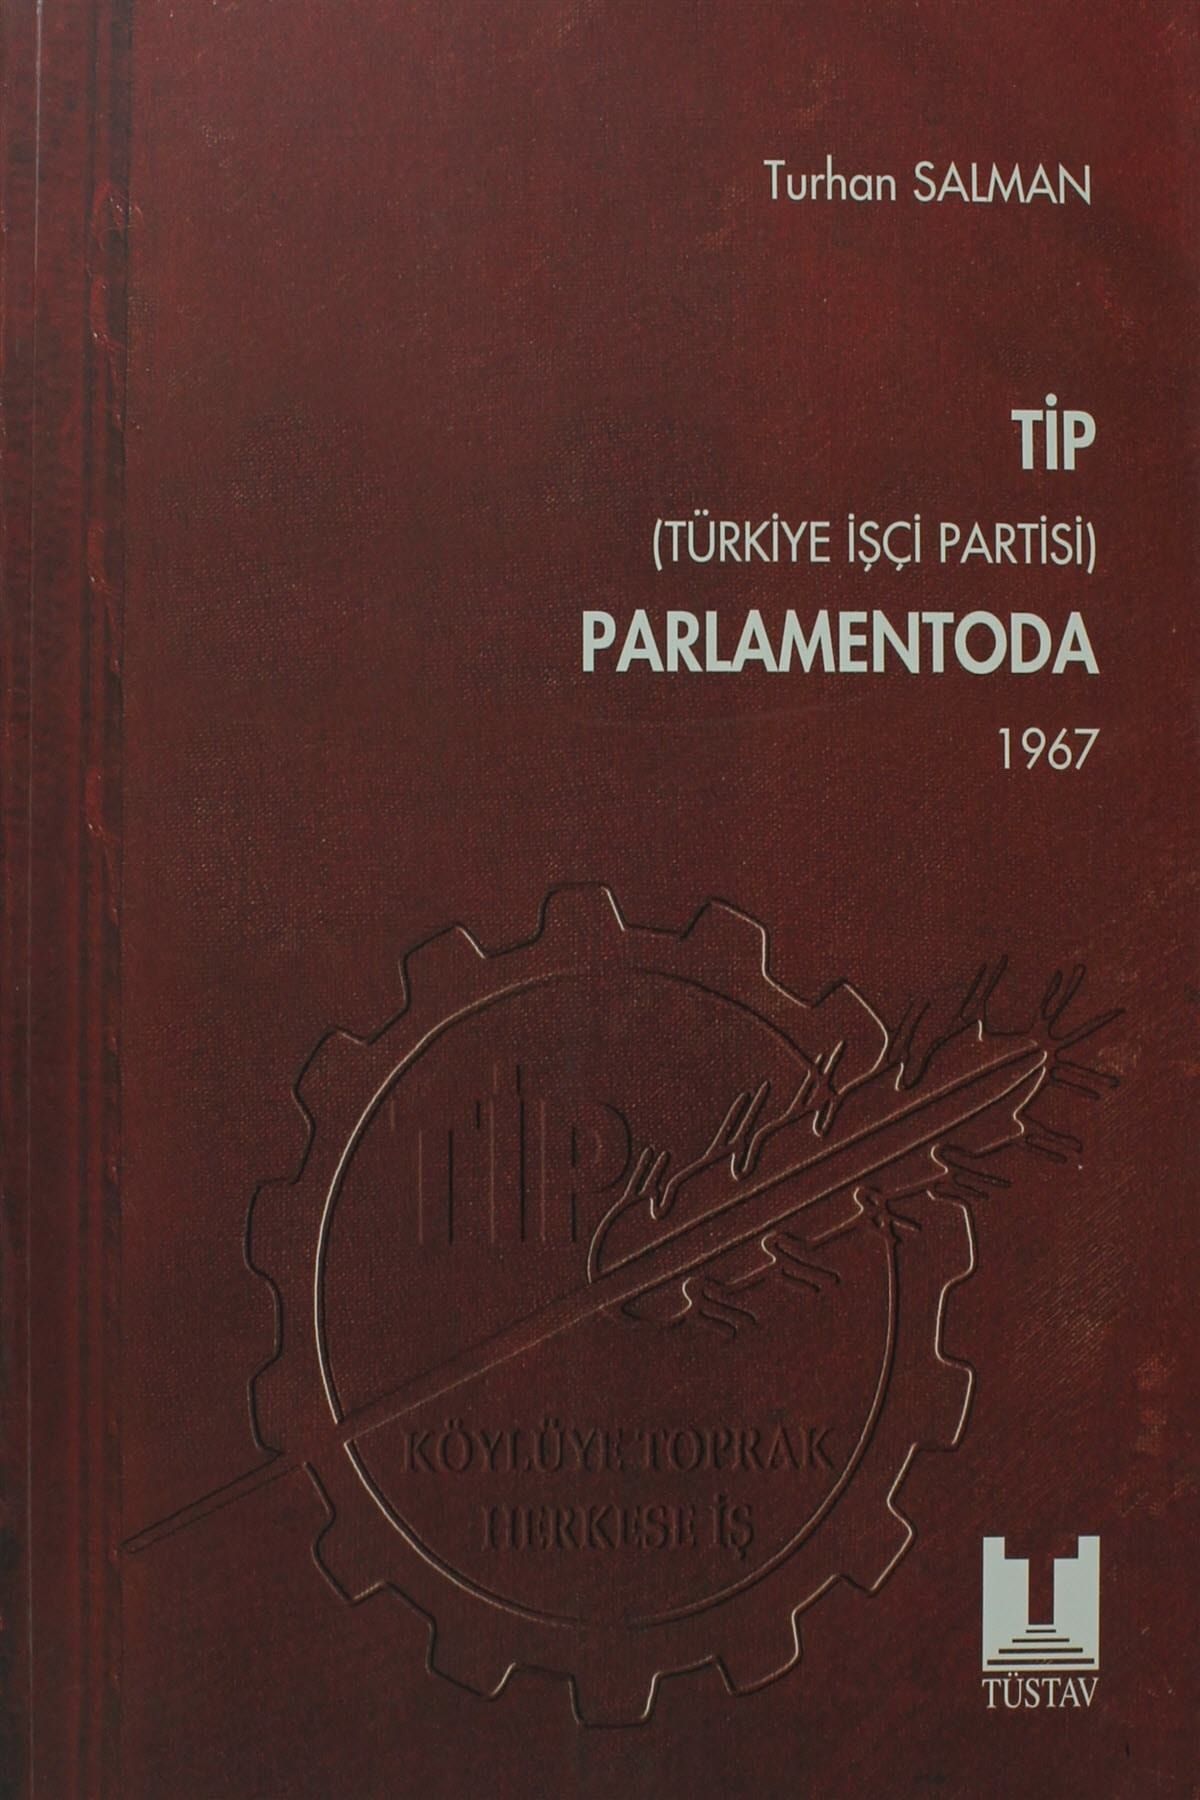 Tüstav İktisadi İşletmesi TİP (Türkiye İşçi Partisi) Parlamentoda 3. Cilt - Turhan Salman